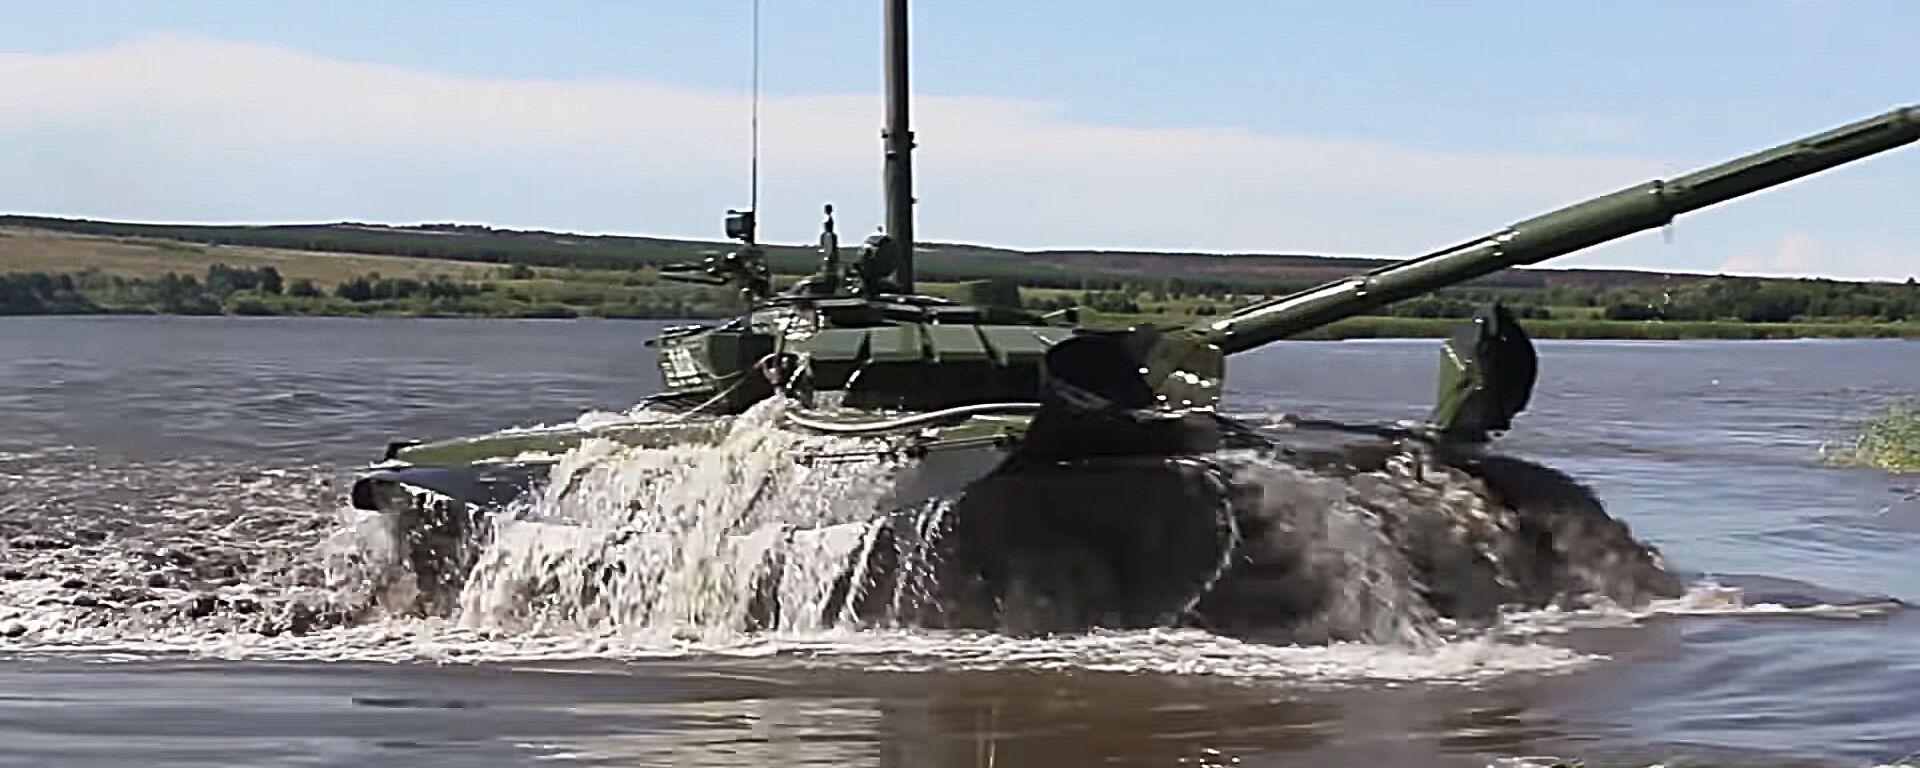 Подводное вождение танков в Оренбургской области - Sputnik Lietuva, 1920, 30.07.2020